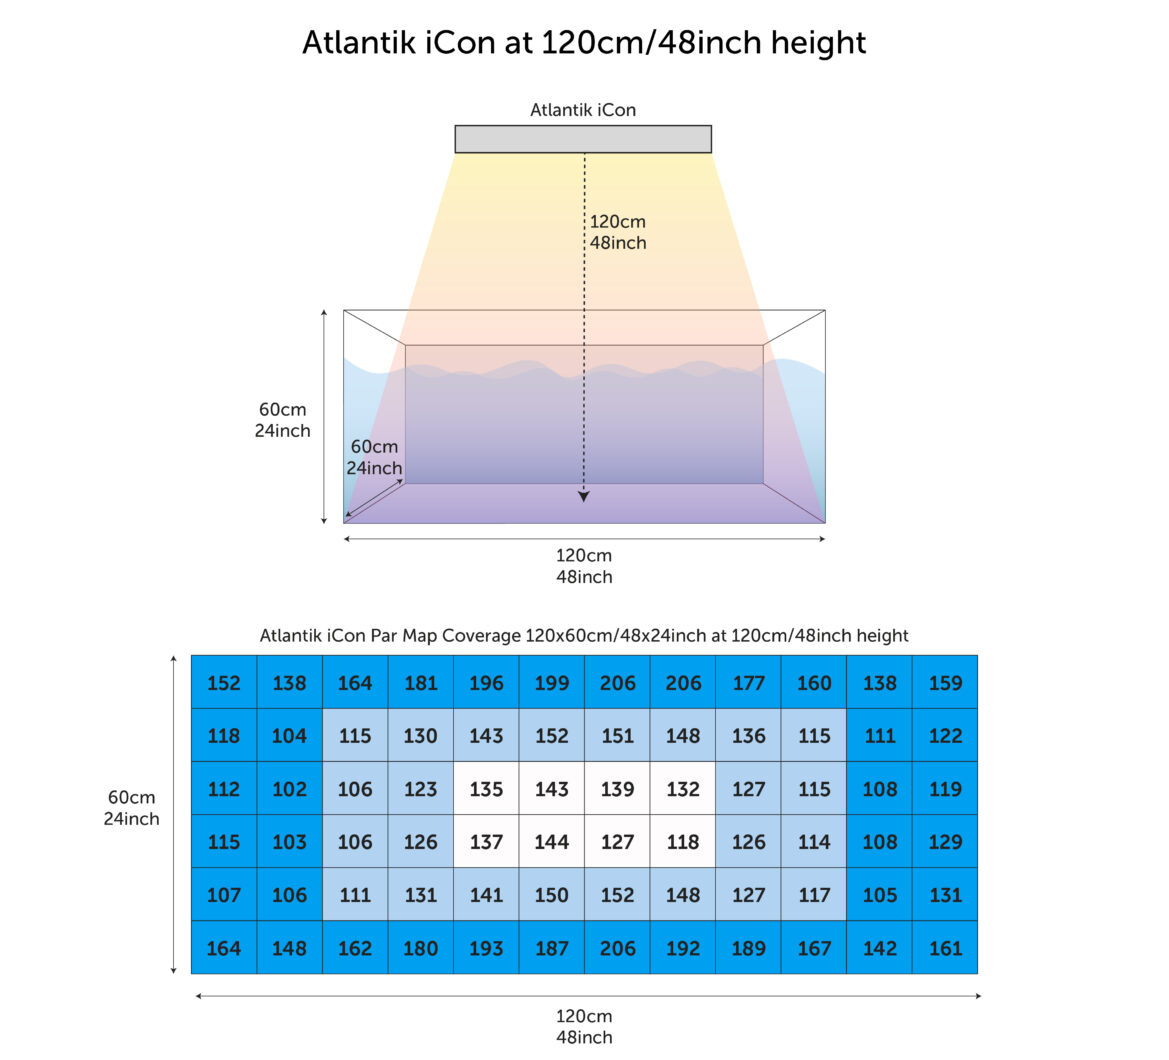 Atlantik_iCon_PAR_avlesninger_målt_fra_120 cm_av_tanken